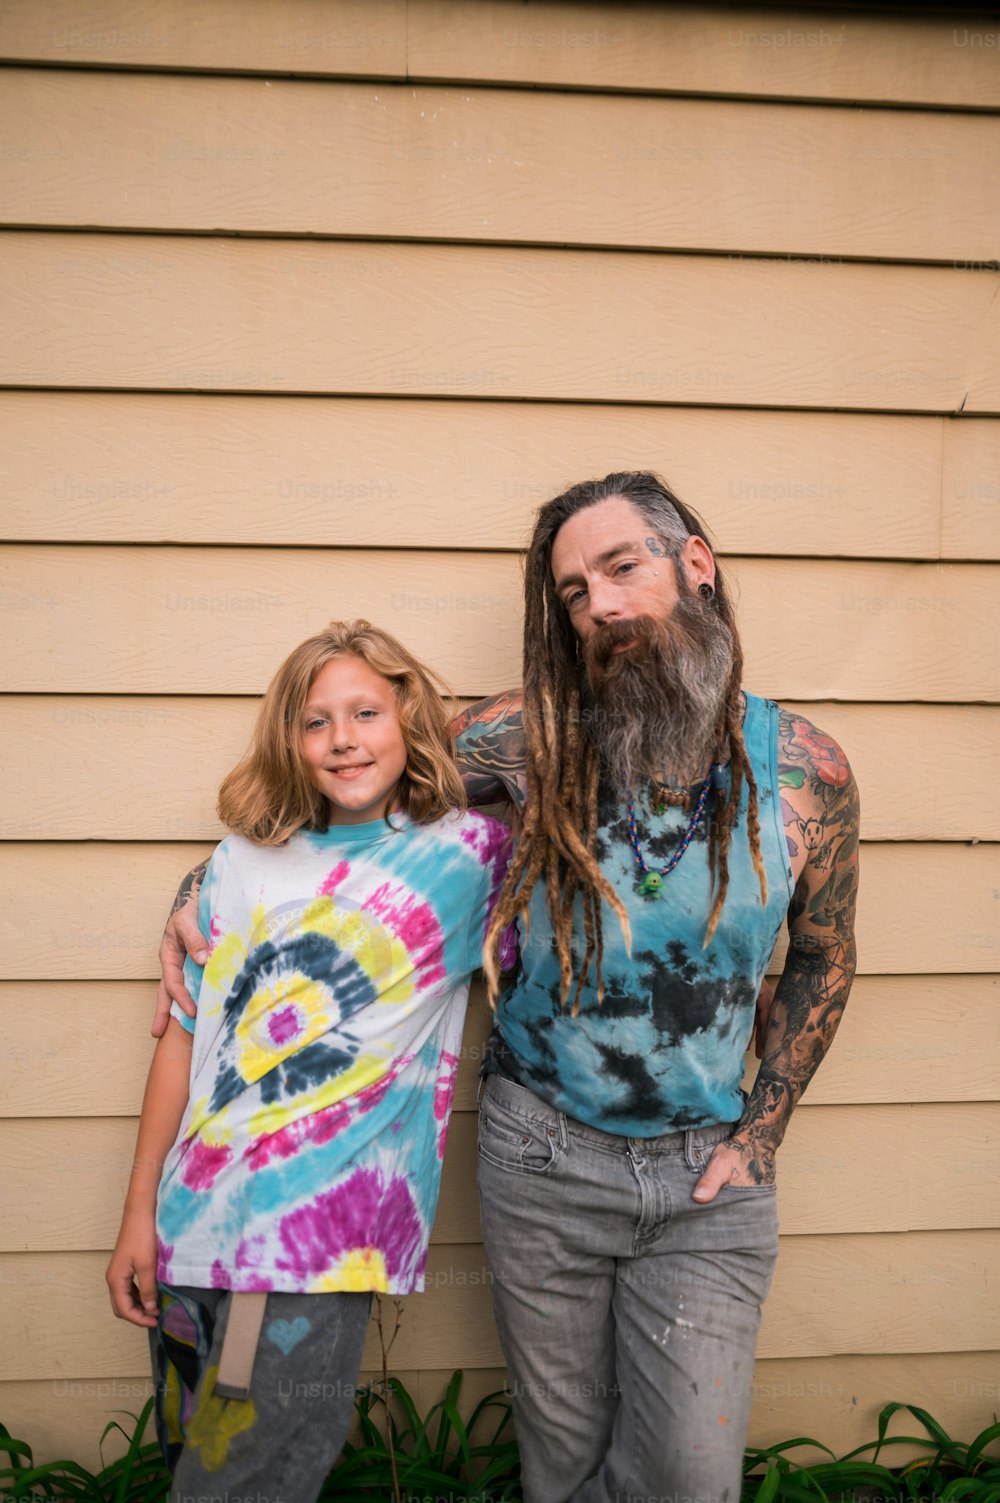 Un homme avec une longue barbe debout à côté d’une petite fille